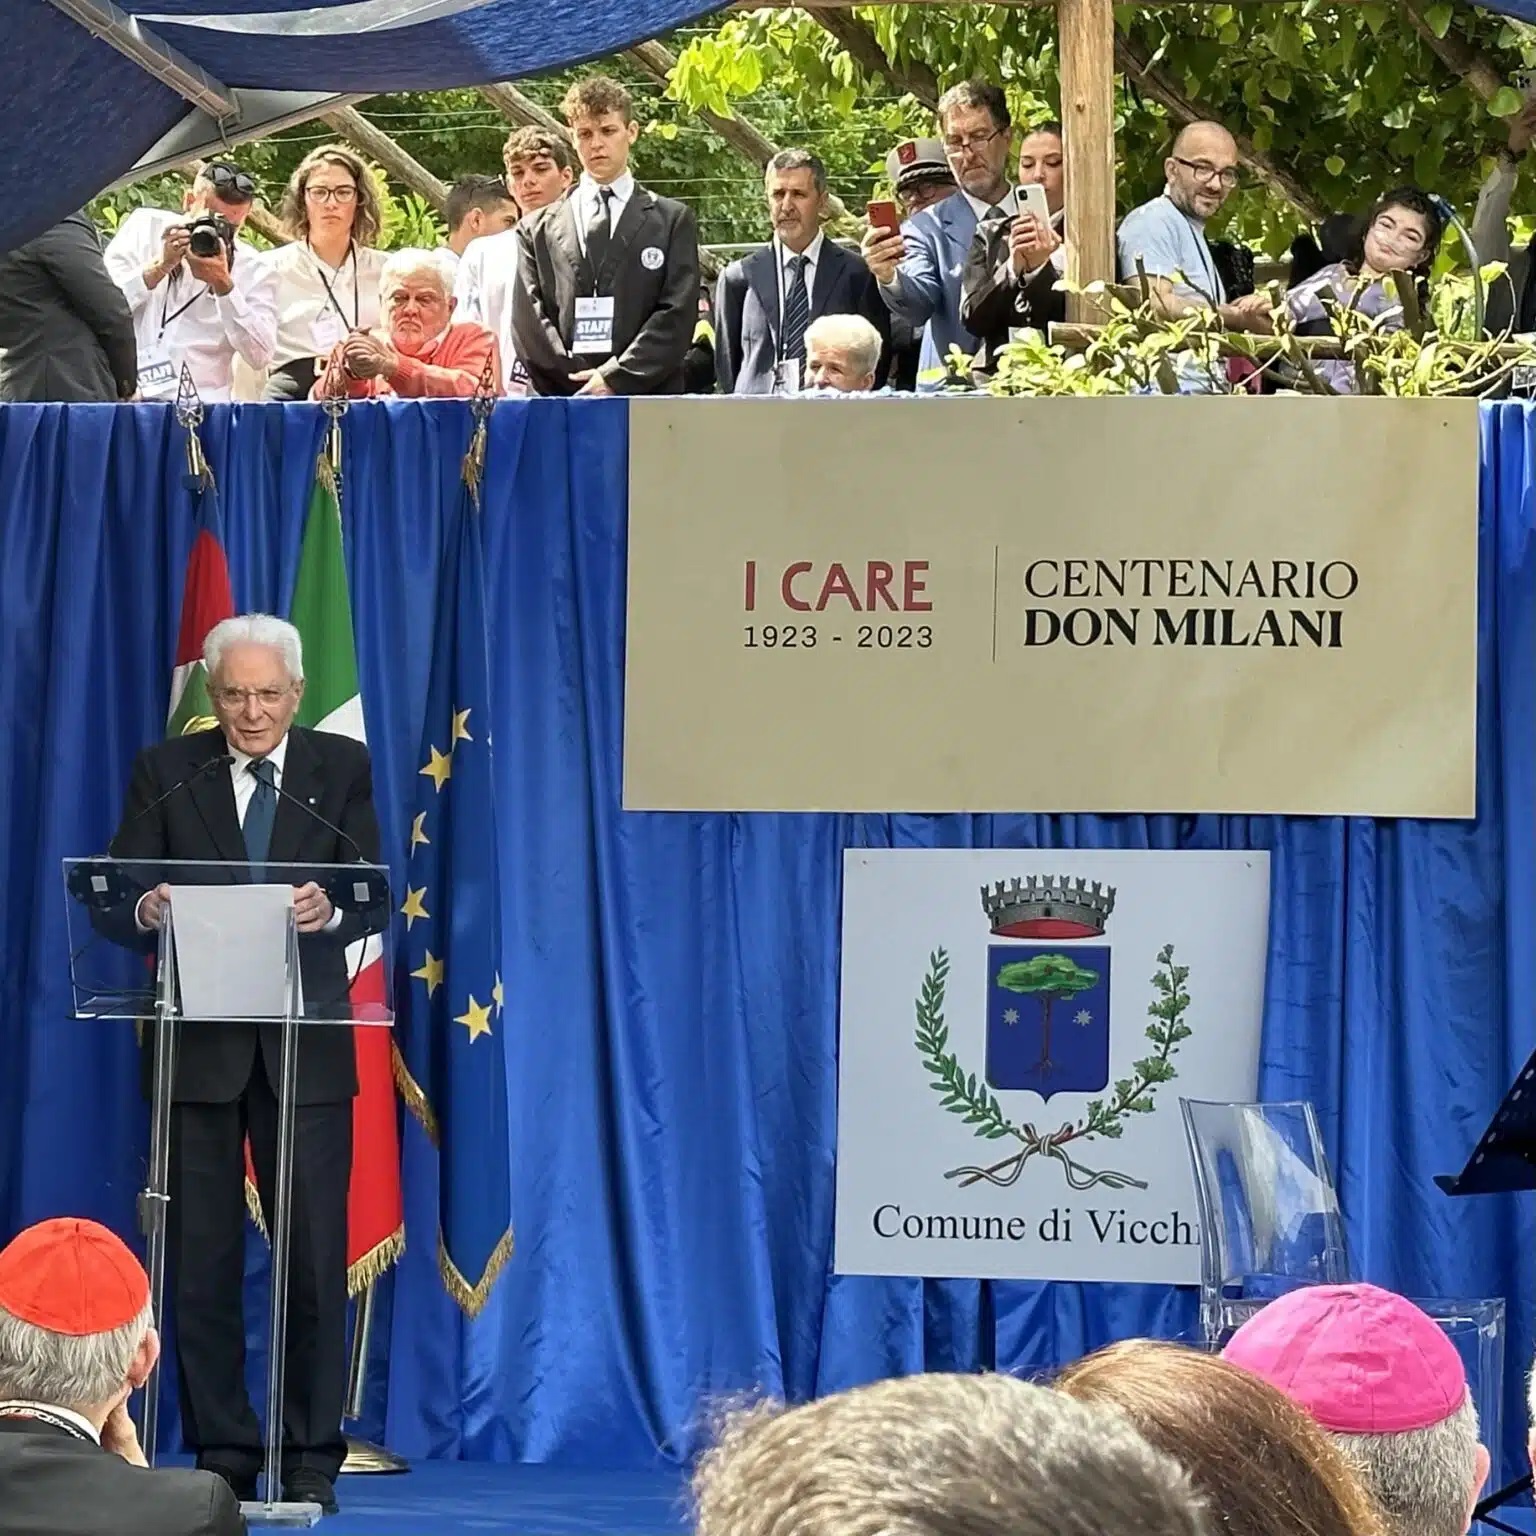 Don Milani. Apertura del Centenario alla presenza del Presidente della Repubblica - Presentazione